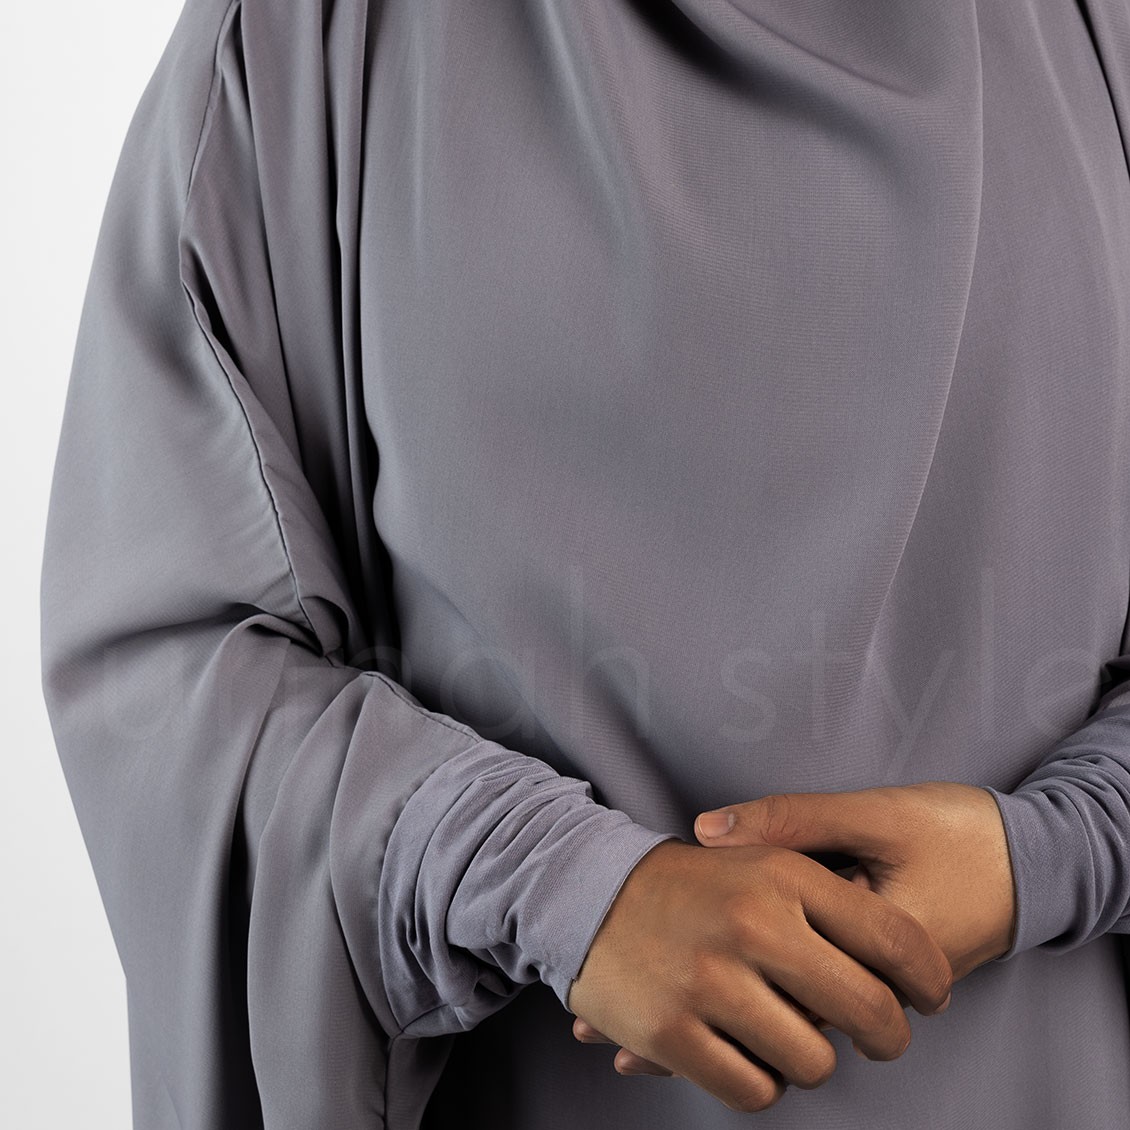 Sunnah Style Plain Jilbab Top Knee Length Grey